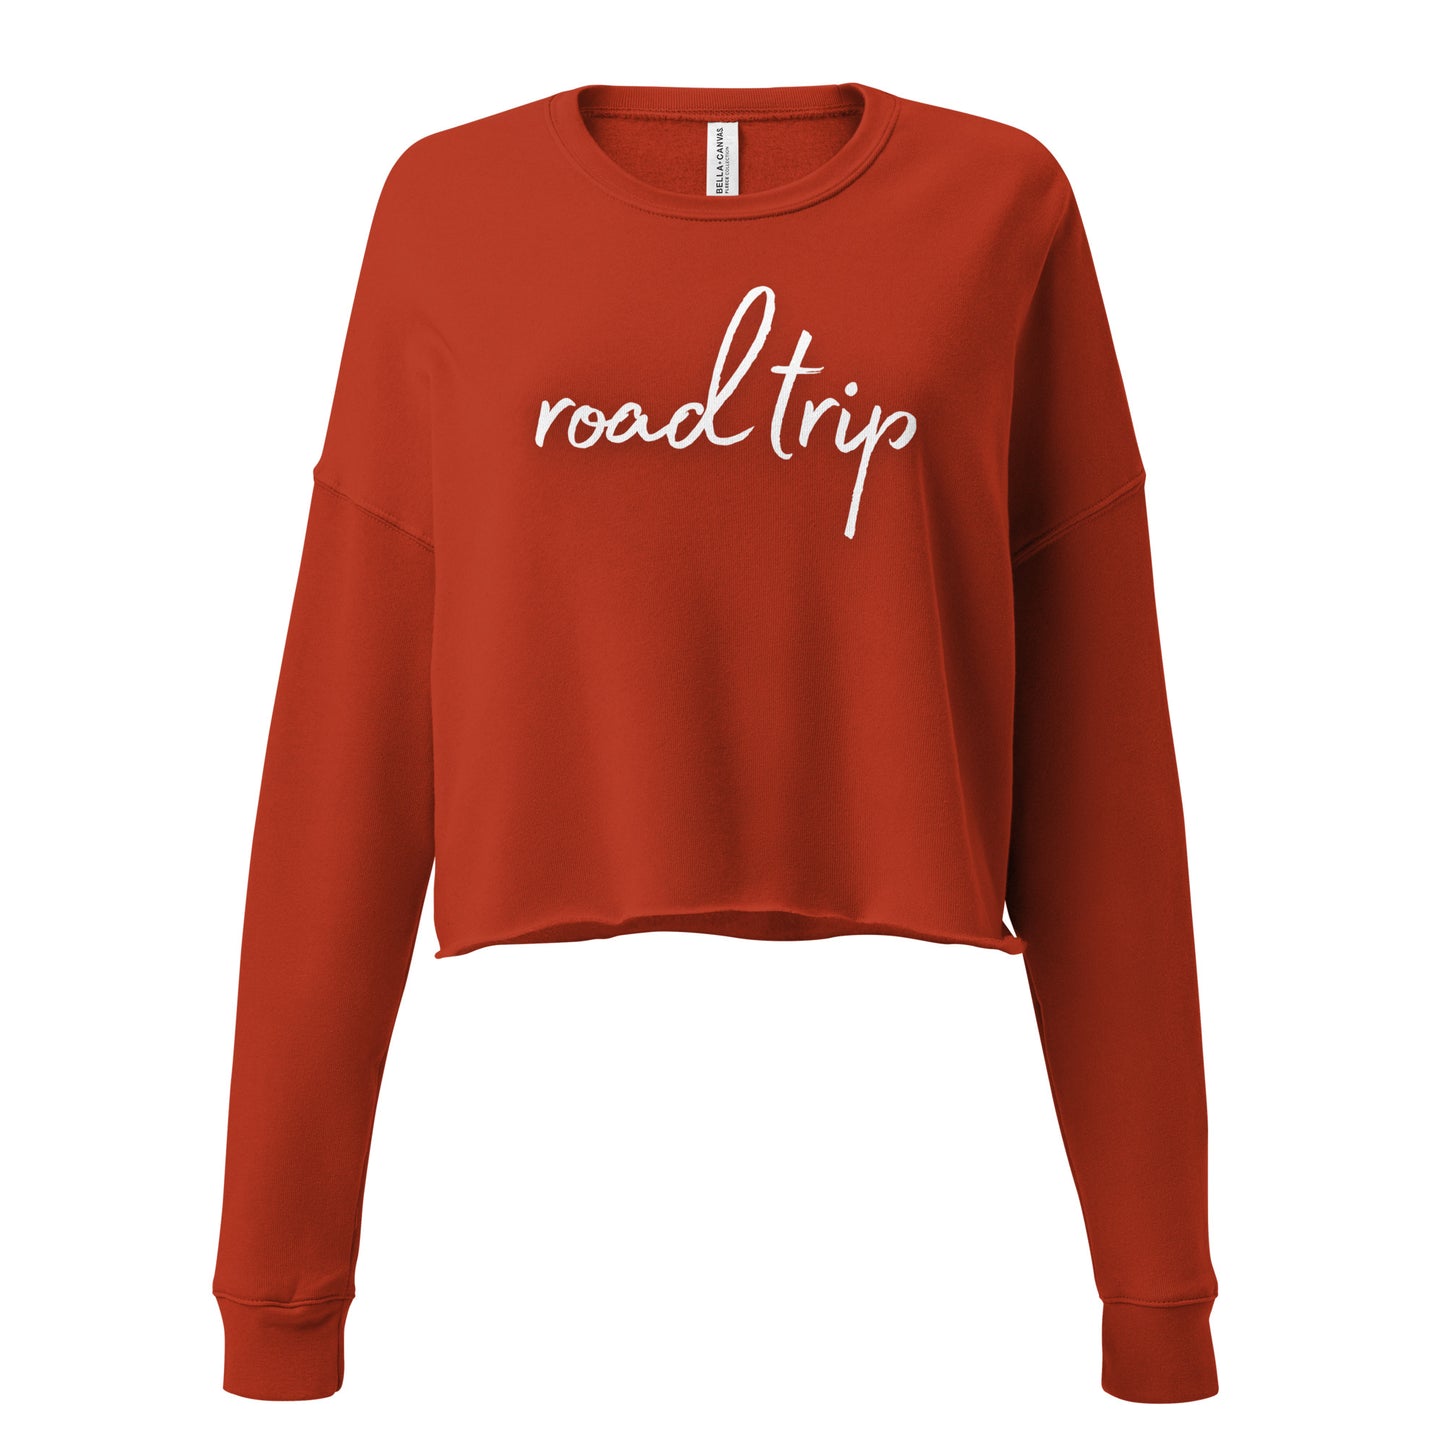 Roadtrip Women's Crop Sweatshirt